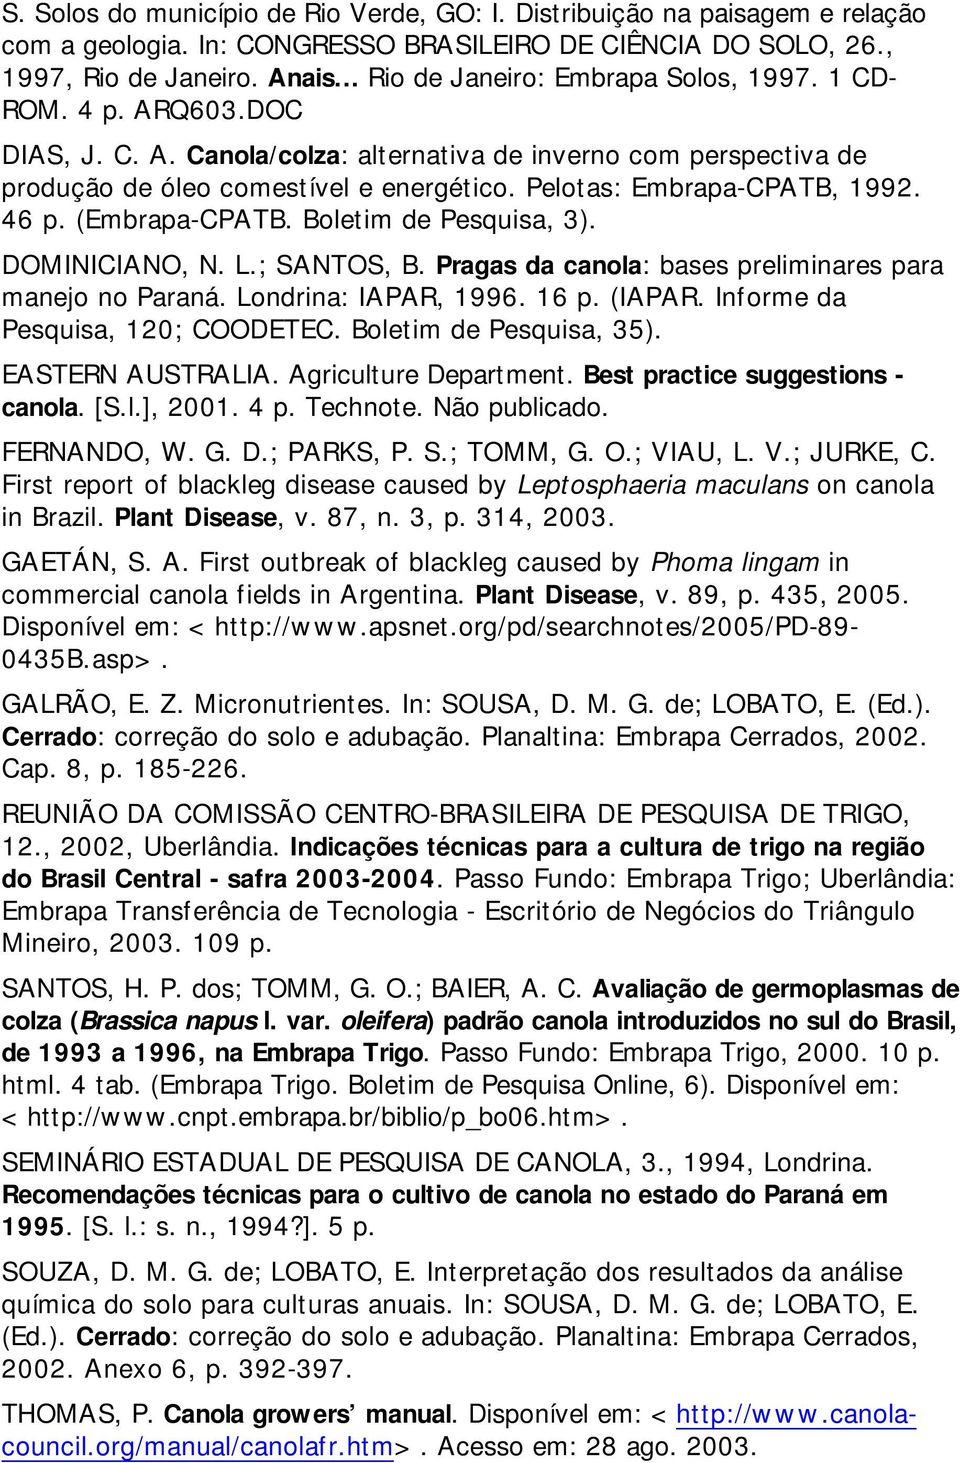 Pelotas: Embrapa-CPATB, 1992. 46 p. (Embrapa-CPATB. Boletim de Pesquisa, 3). DOMINICIANO, N. L.; SANTOS, B. Pragas da canola: bases preliminares para manejo no Paraná. Londrina: IAPAR, 1996. 16 p.